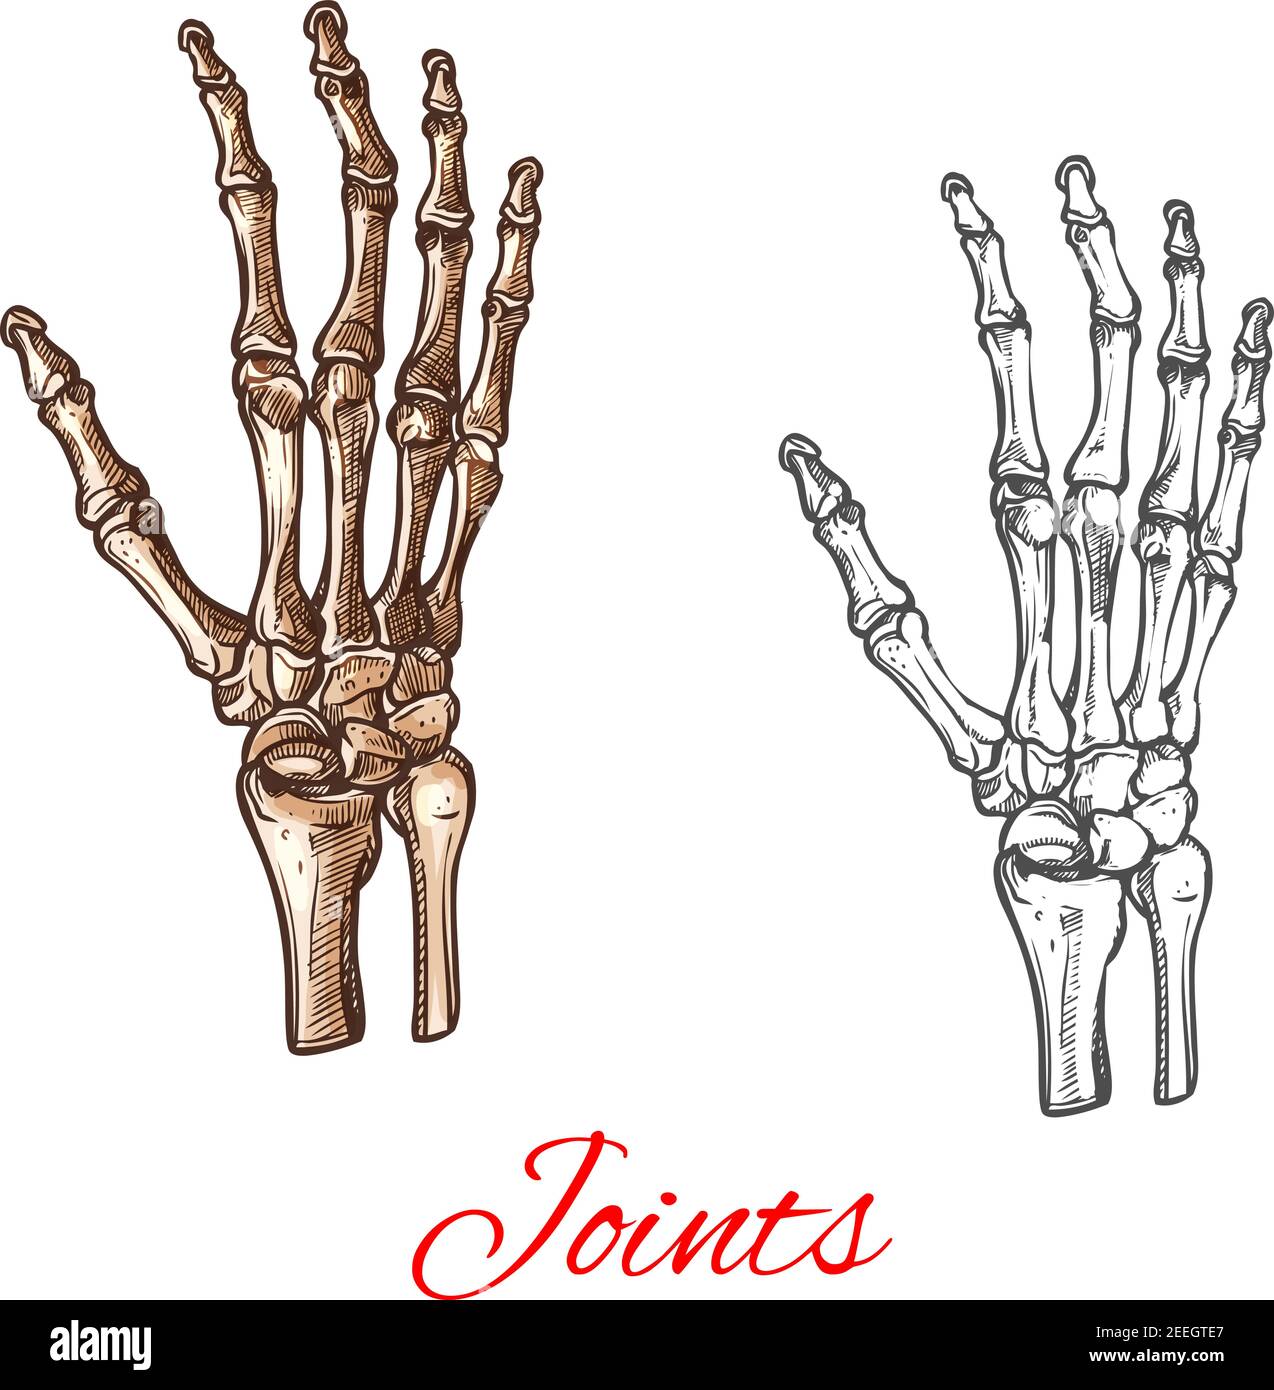 Menschliche handknochen -Fotos und -Bildmaterial in hoher Auflösung – Alamy